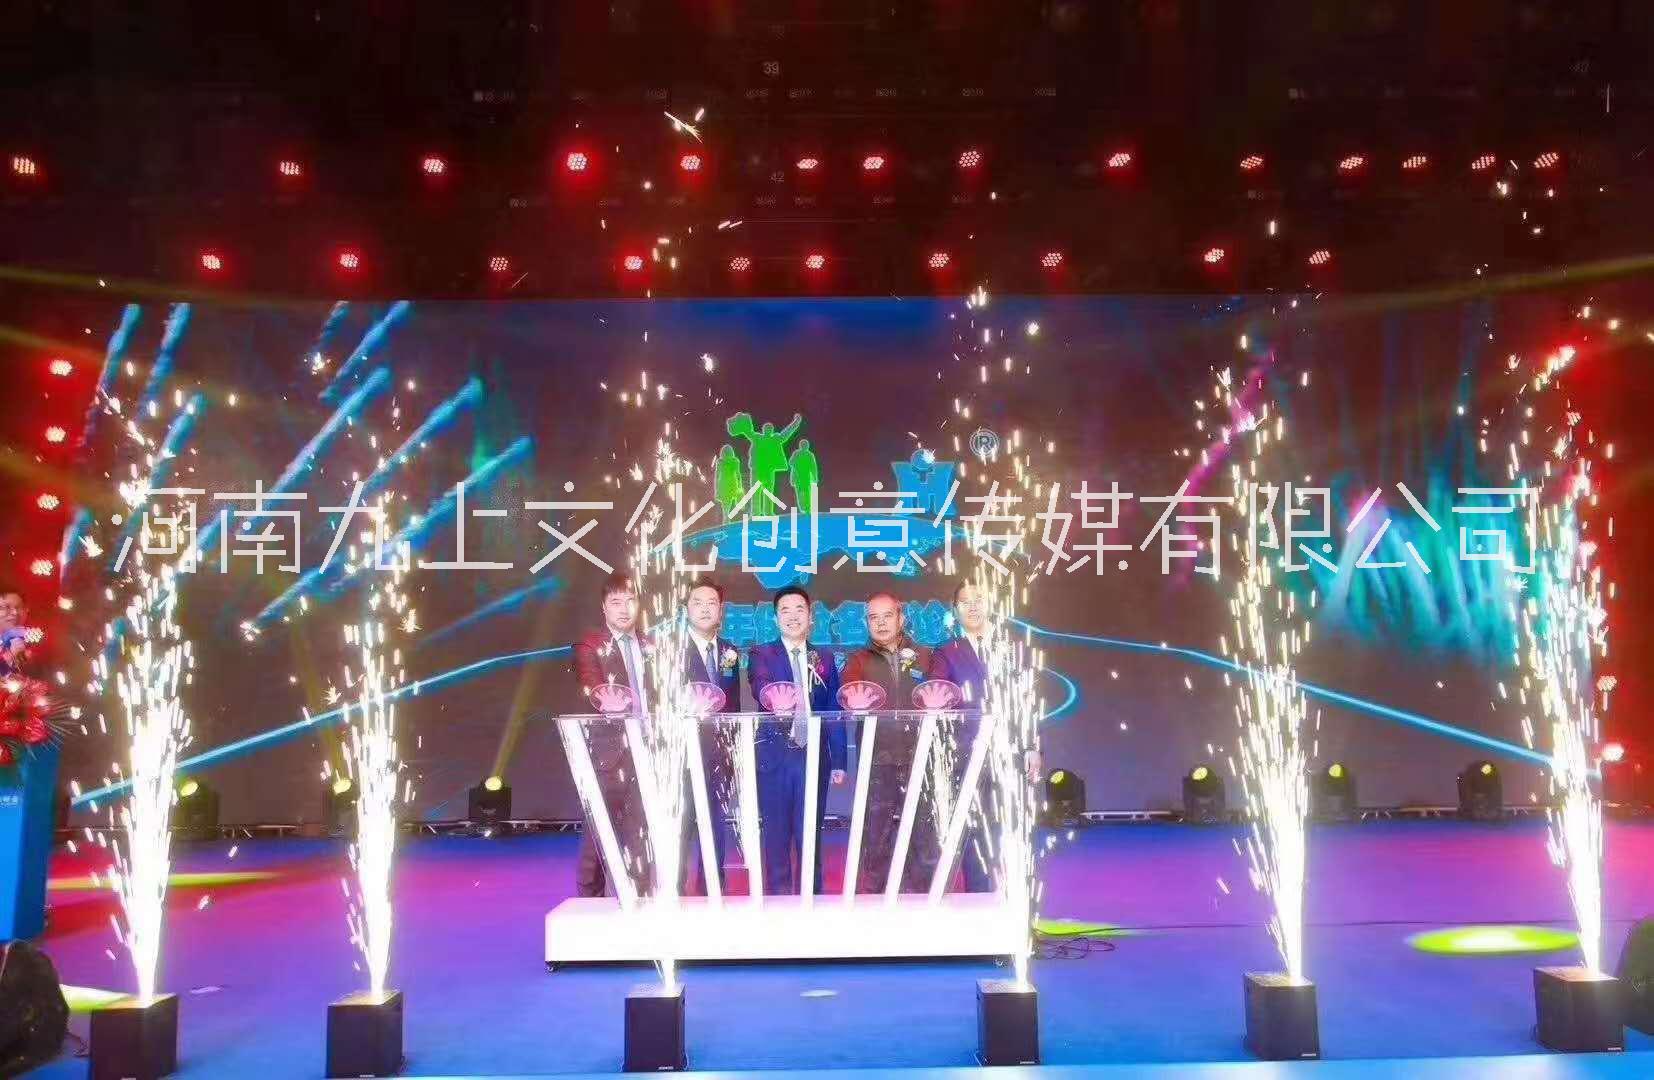 郑州市河南跨年晚会舞台启动道具飞天彩虹 冷烟瀑布 喷花机出租厂家